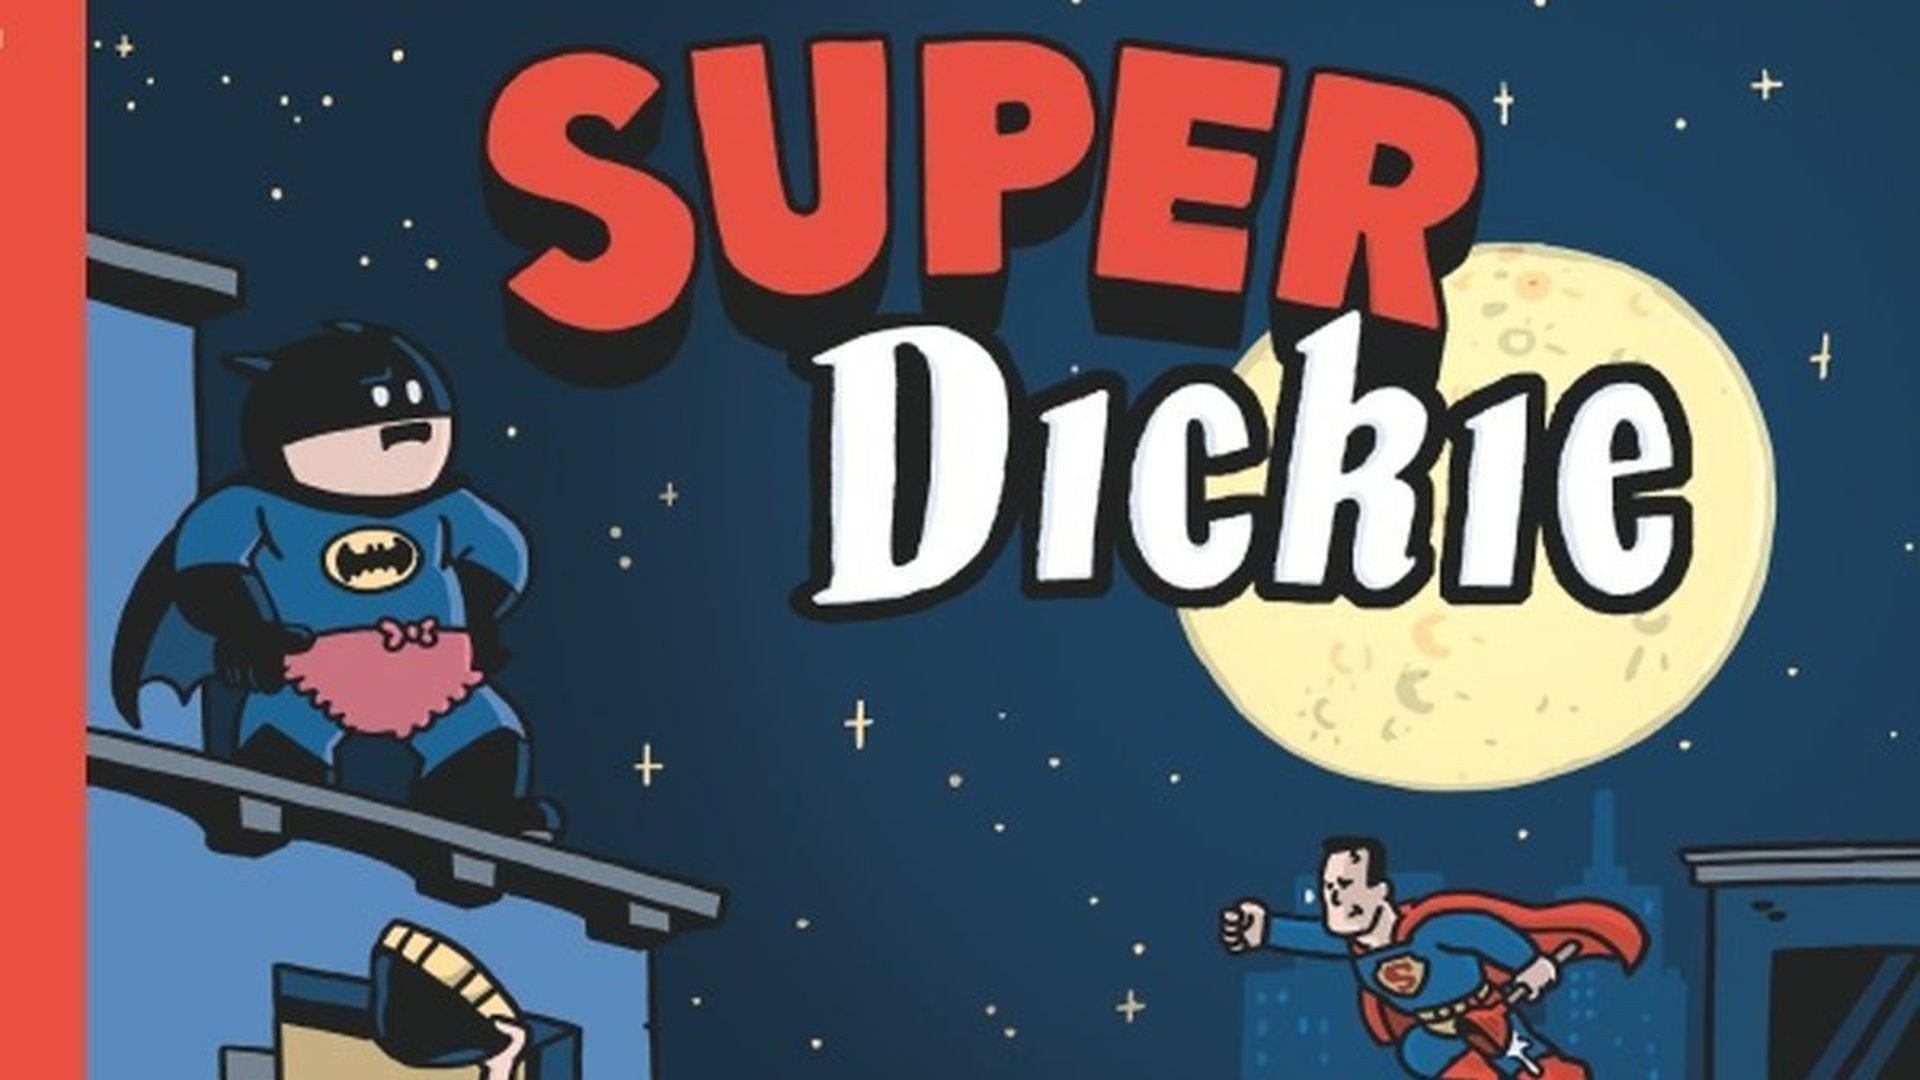 Super Dickie